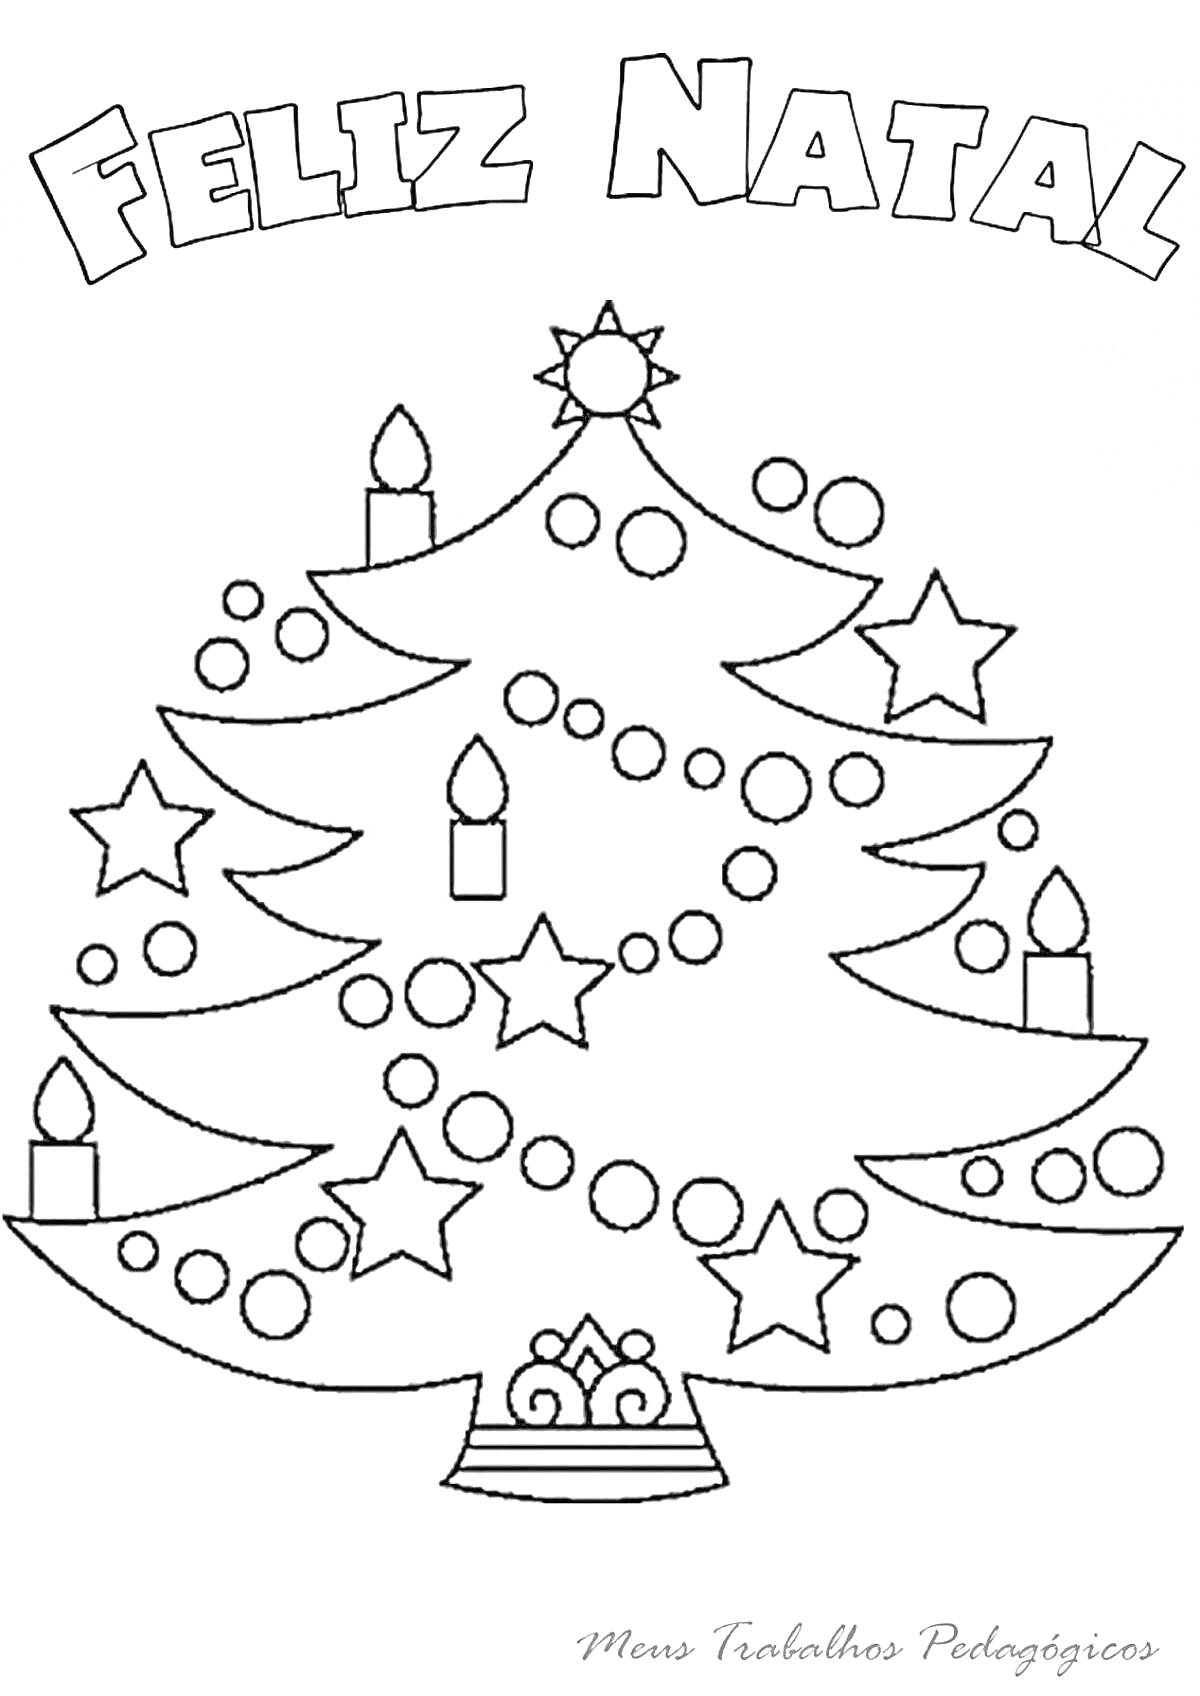 Раскраска Елка с игрушками, украшенная звездами, шарами и свечами, с надписью 